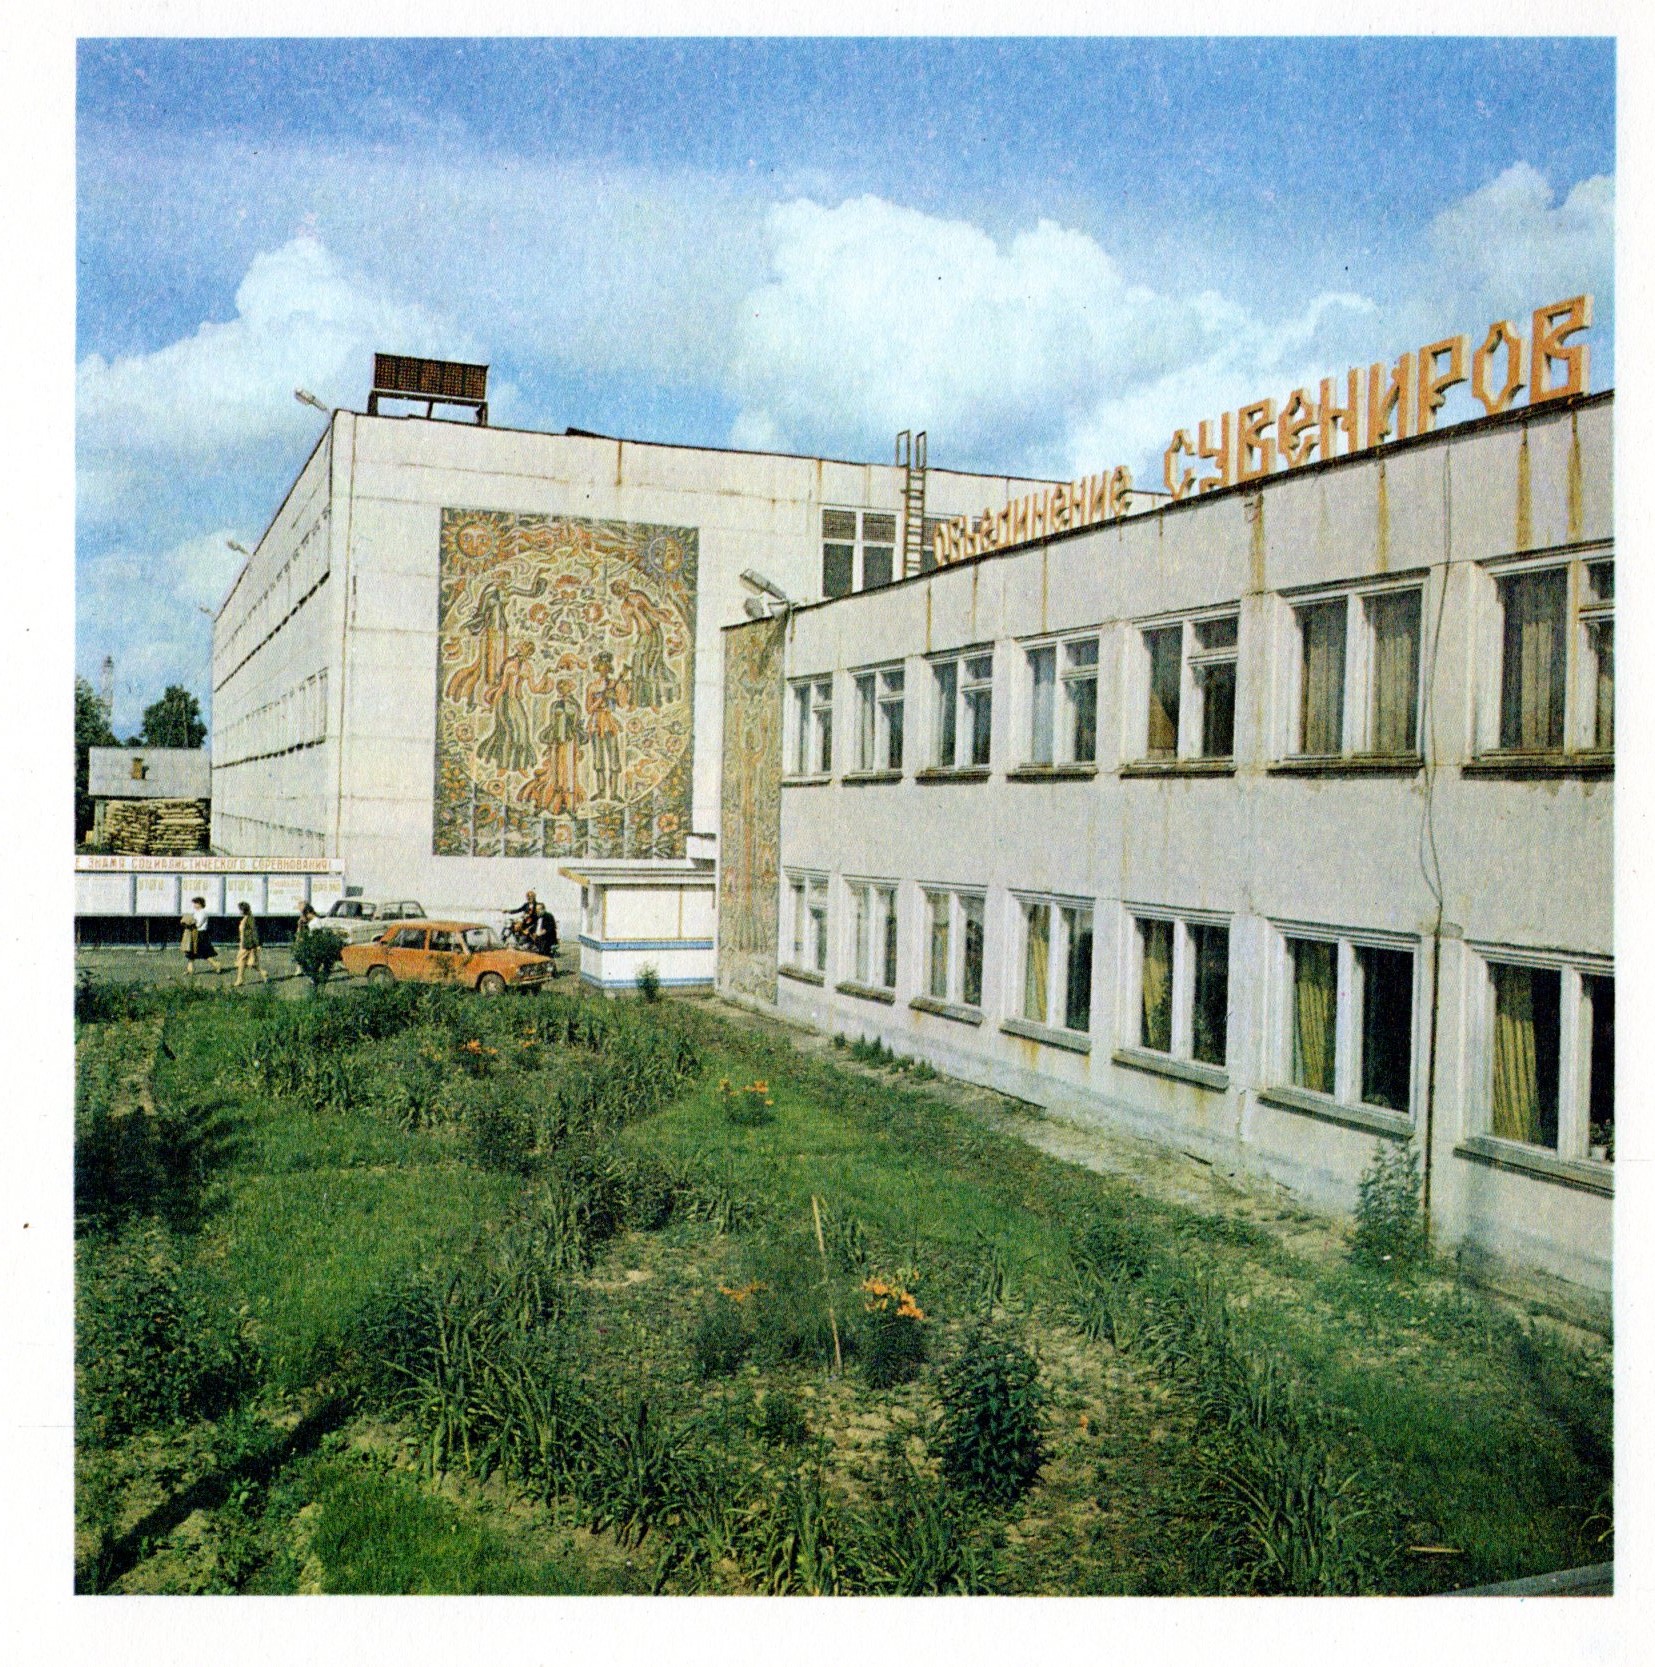 Semyenov Factory circa 1980